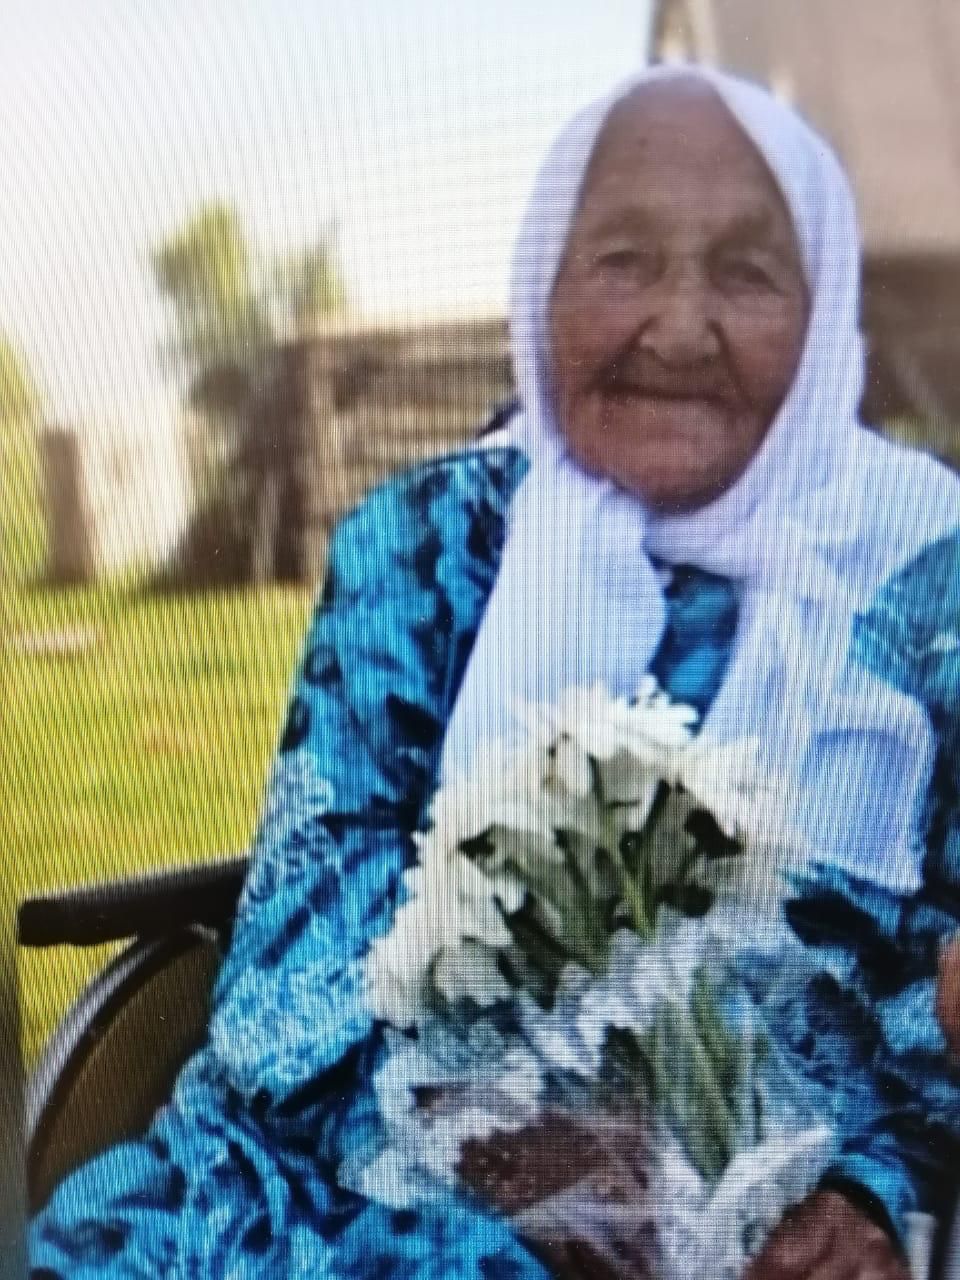 Ушел из жизни старейший человек Нурлатского района – жительница деревни Черное Озеро Бибигомбар Ахмадиева